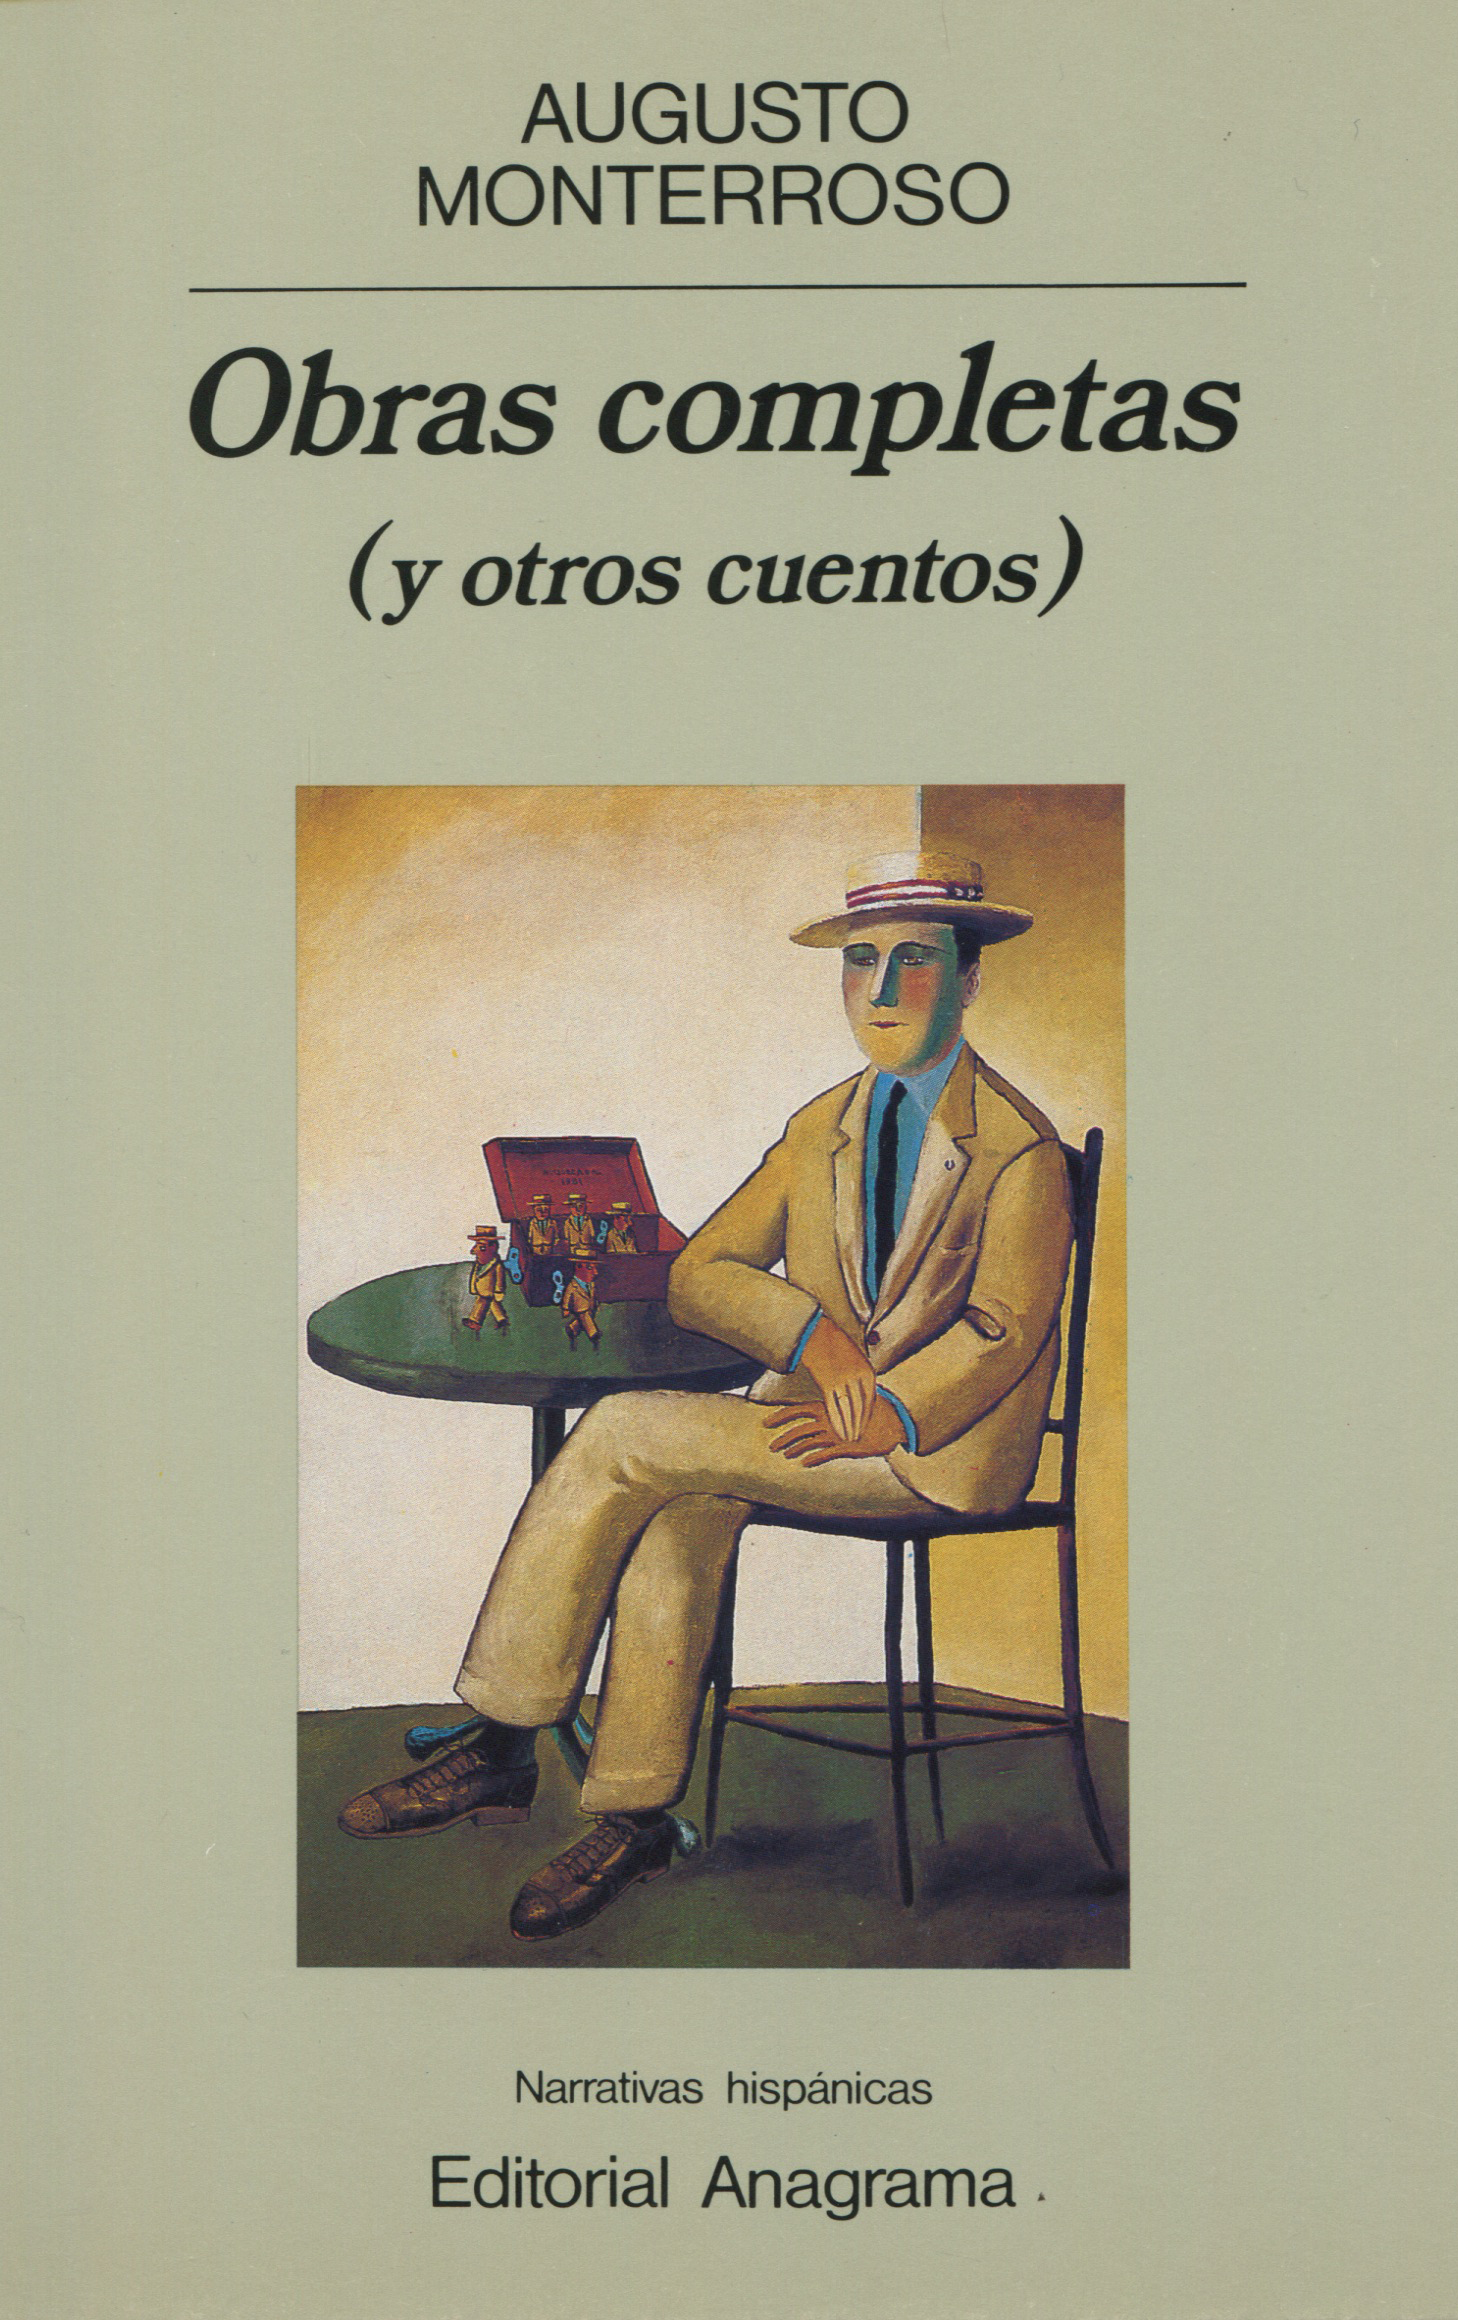 Obras completas (y otros cuentos) - Monterroso, Augusto - 978-84-339-0913-8  - Editorial Anagrama